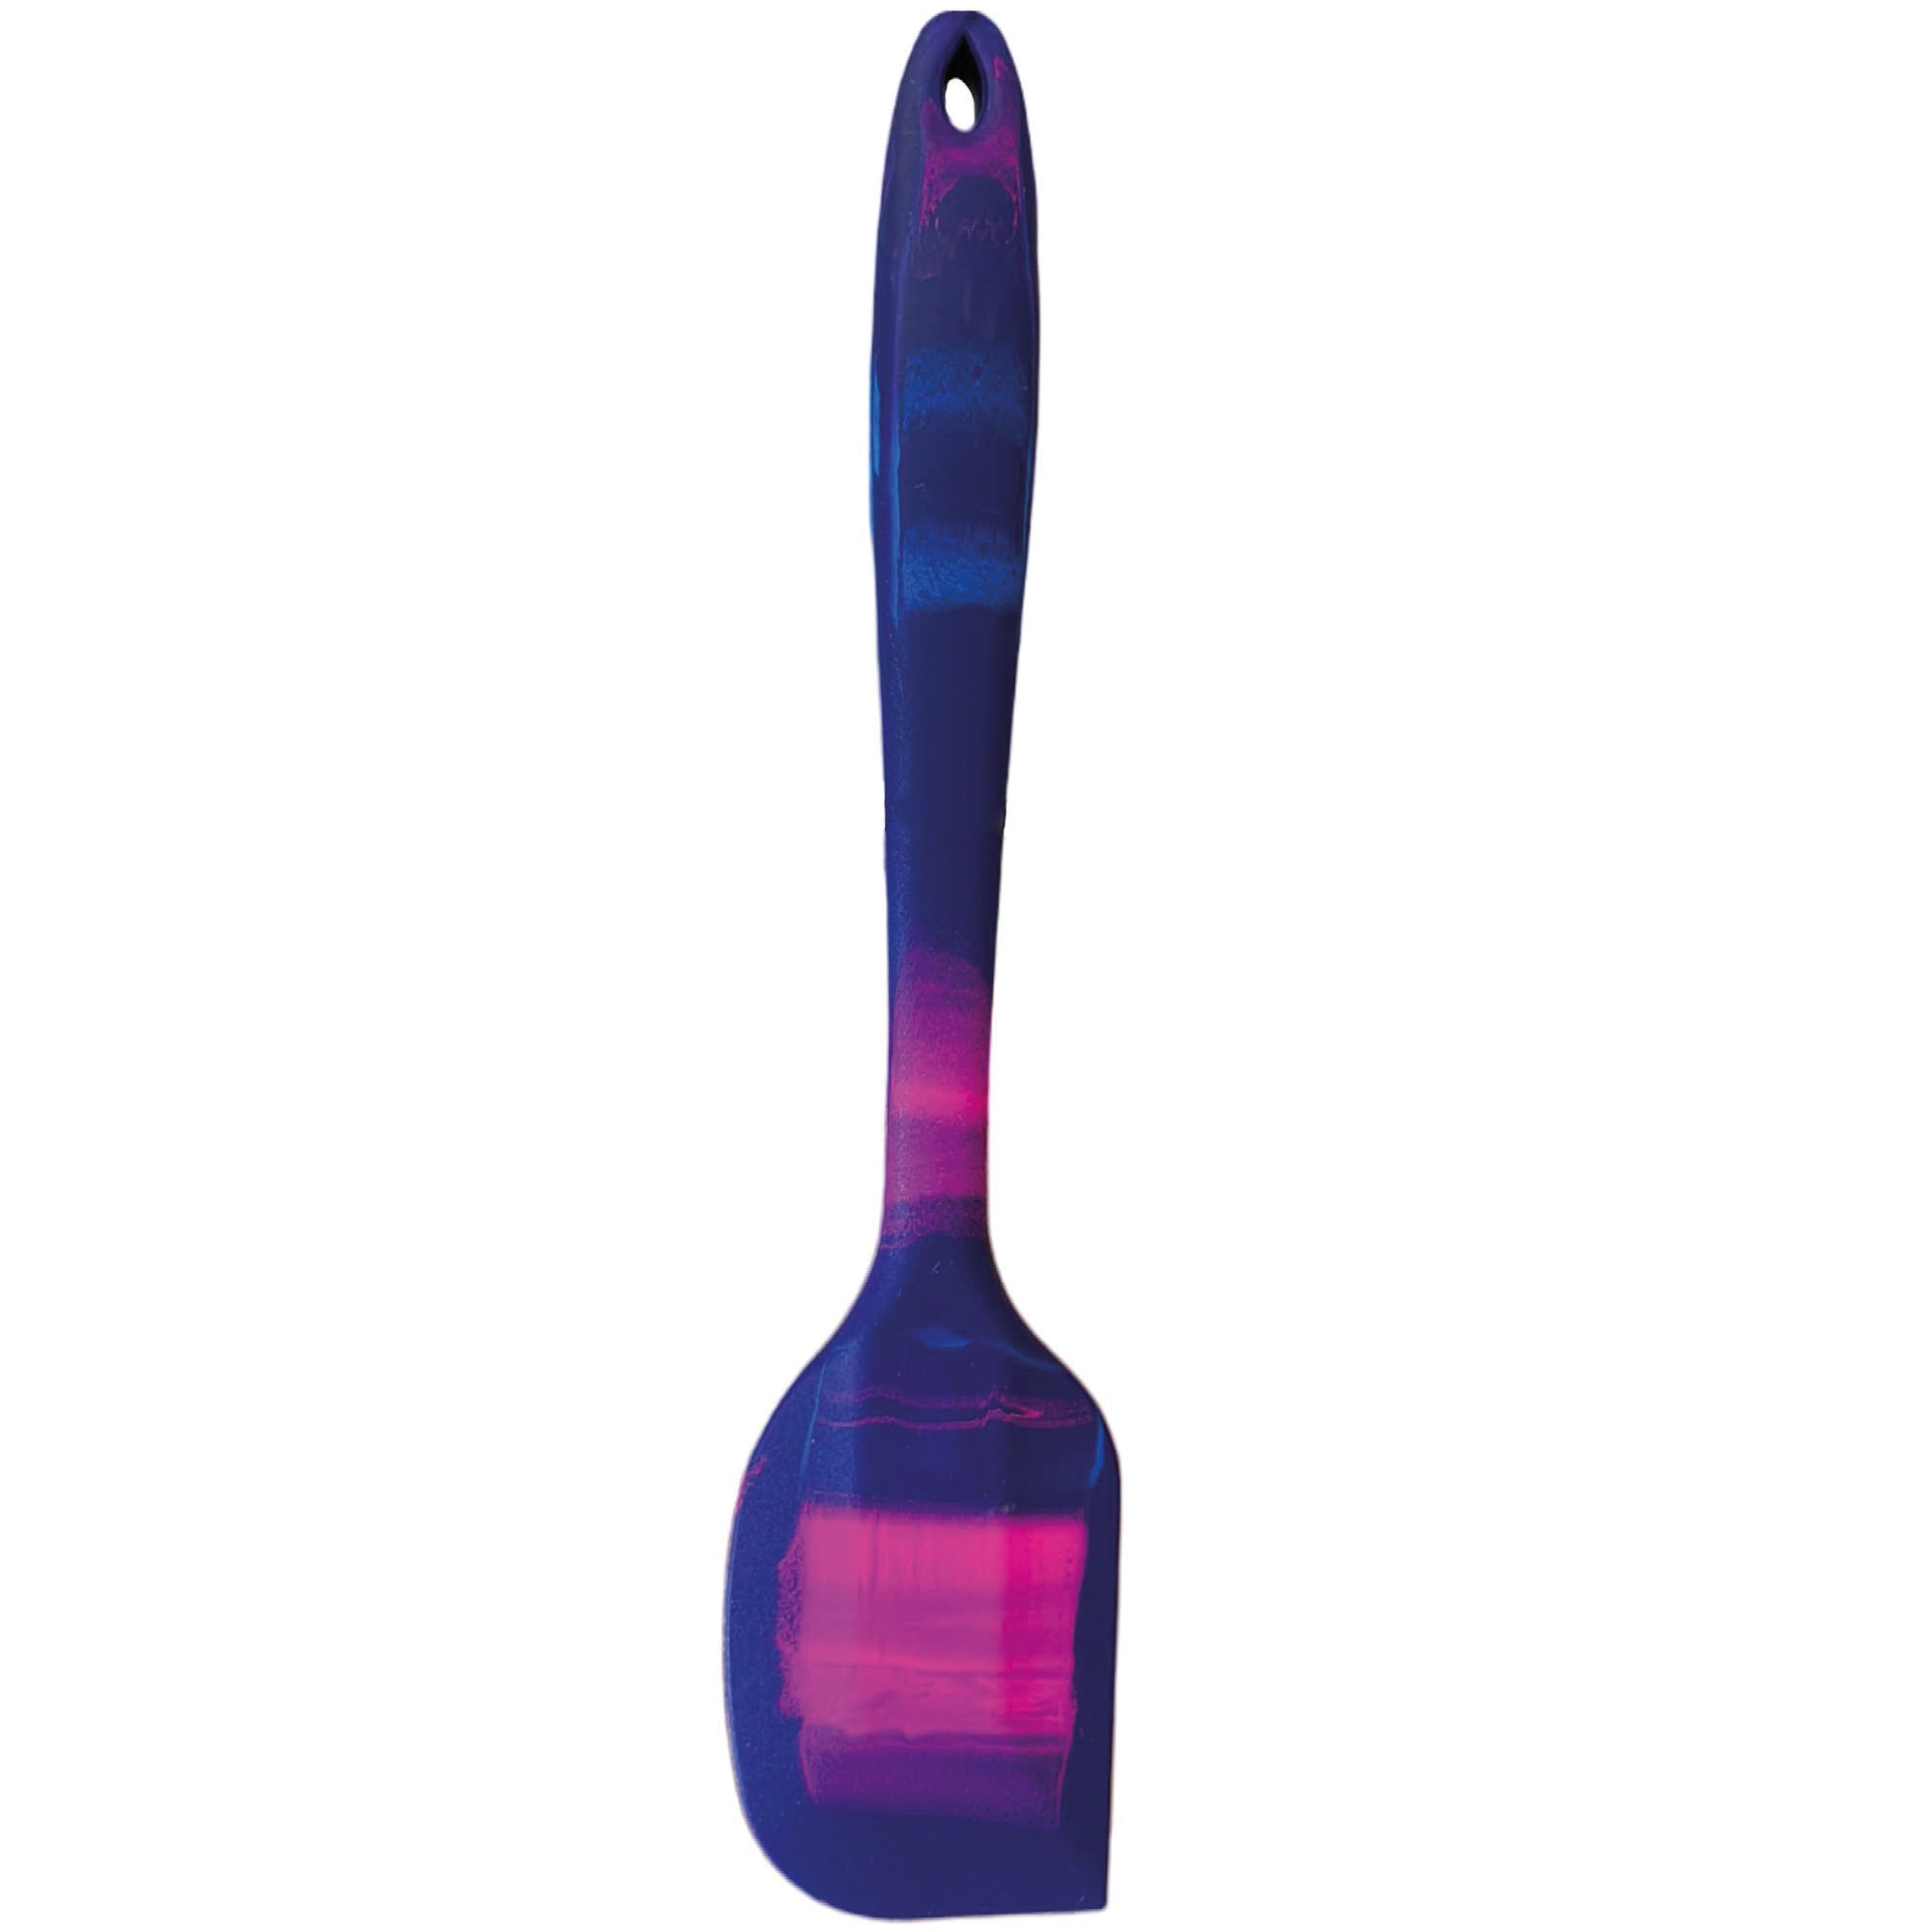 Galaxy confectionery spatula